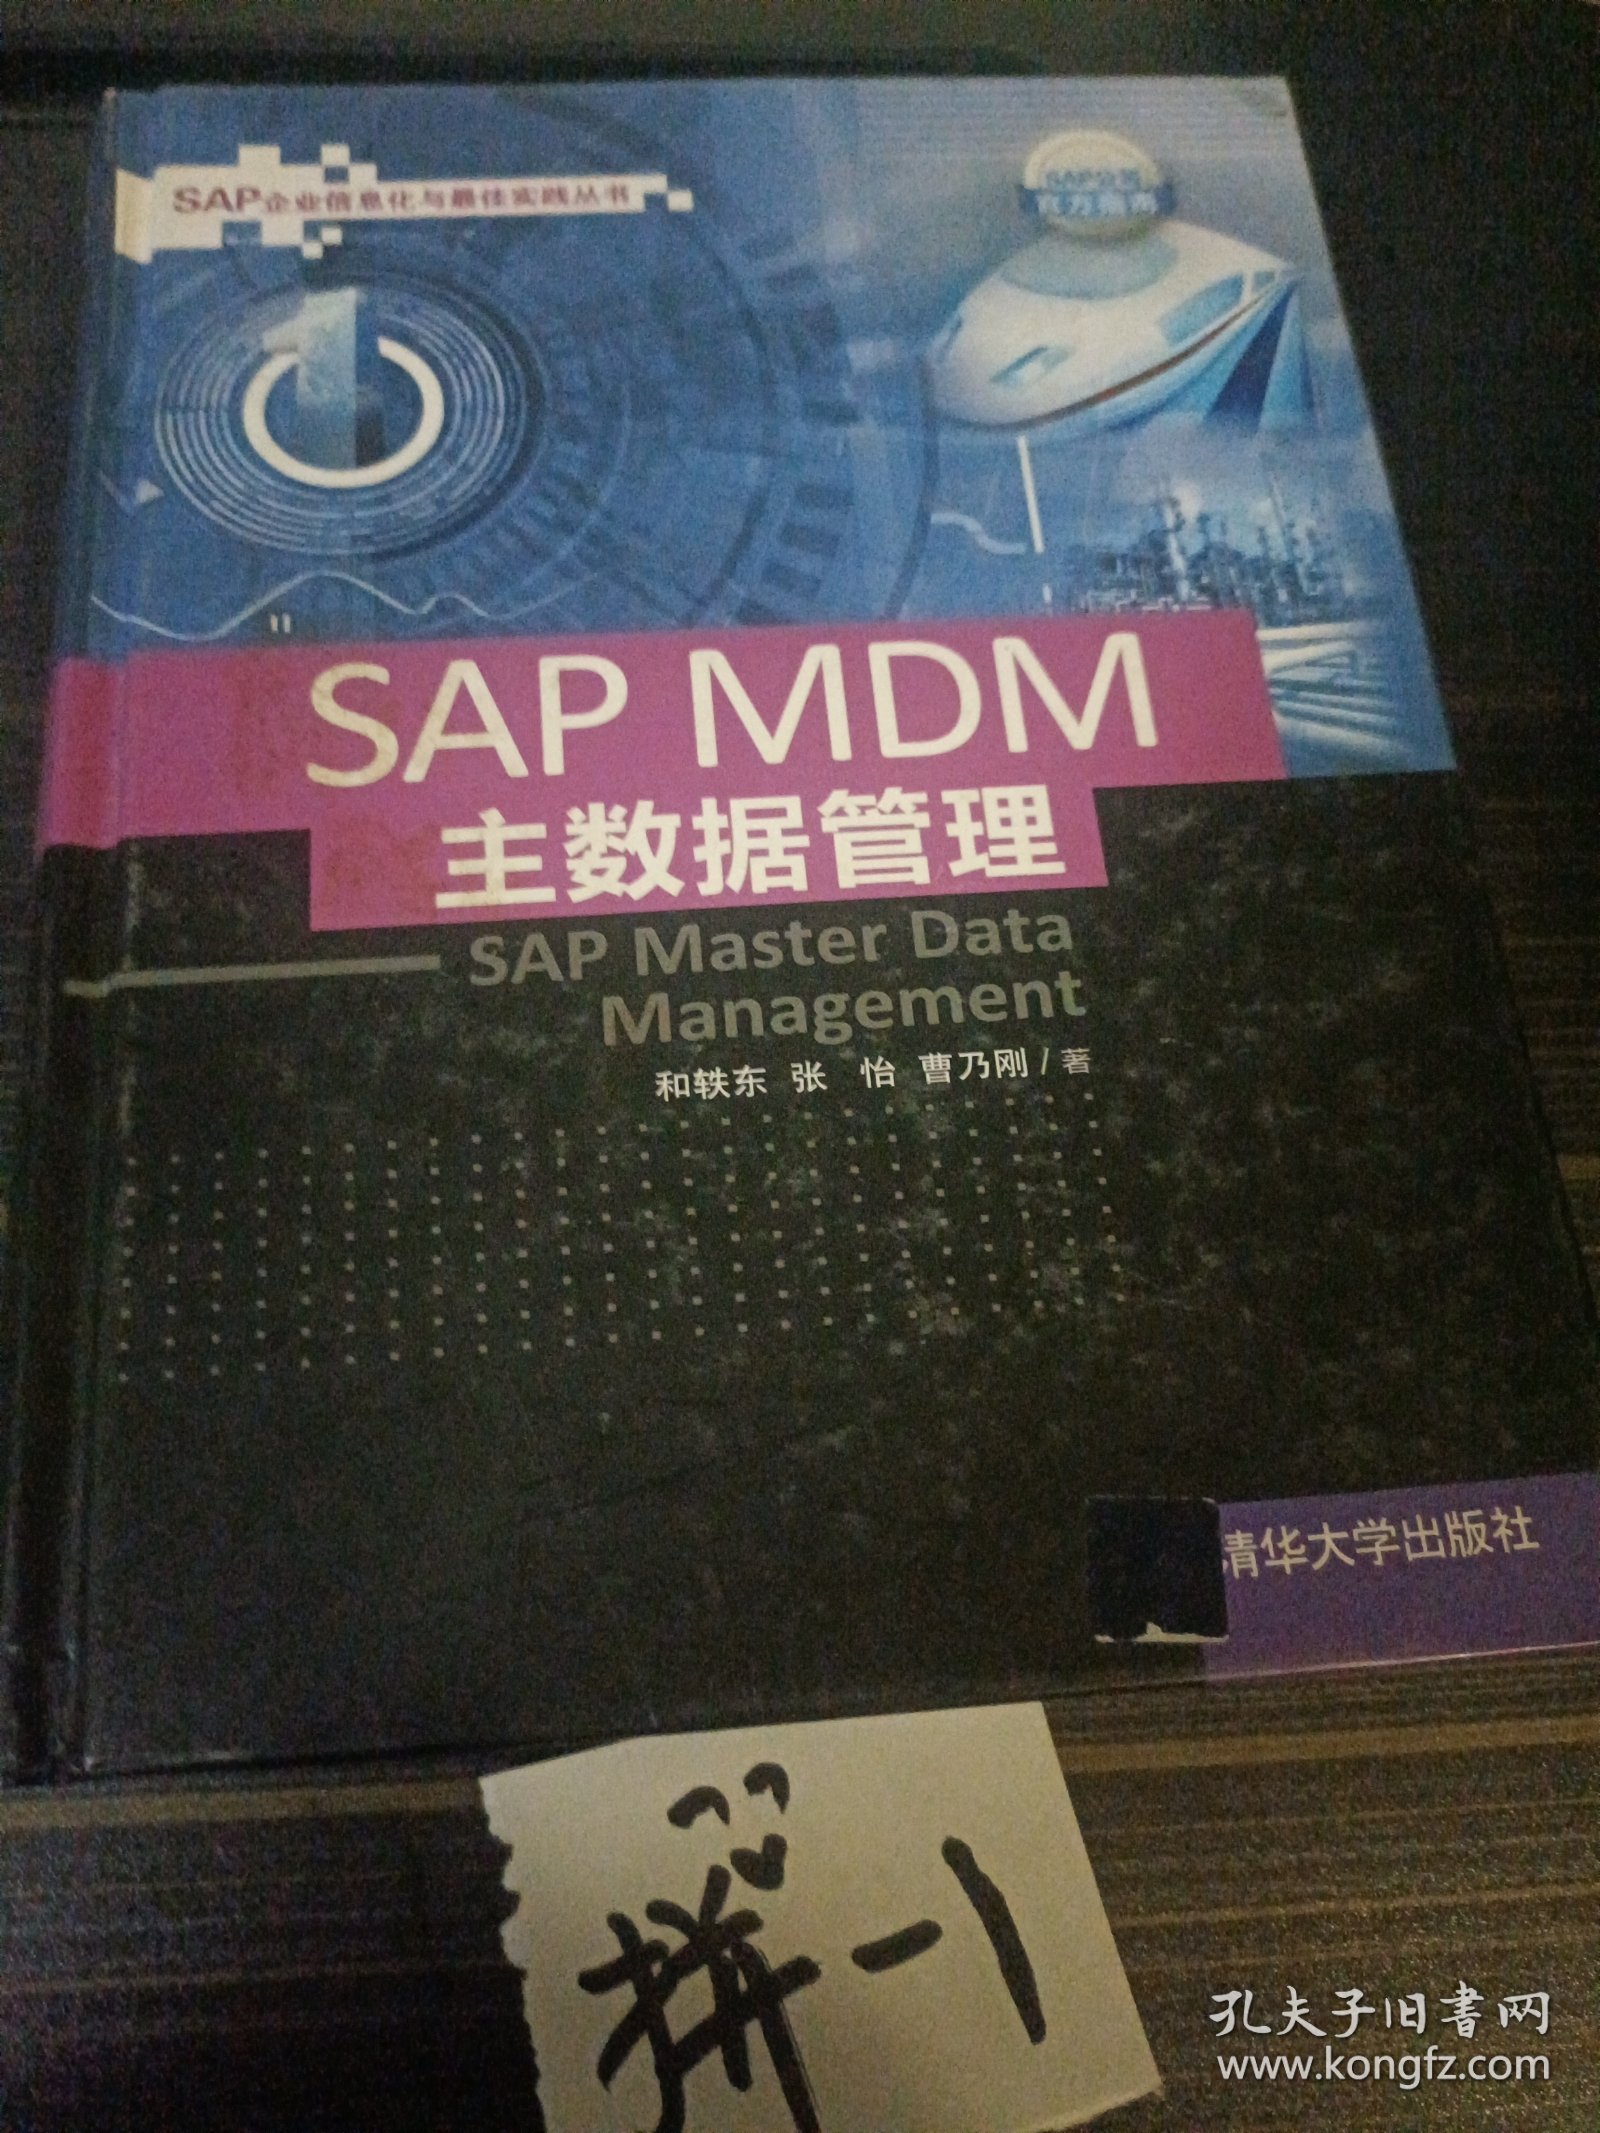 SAP MDM 主数据管理(馆藏)